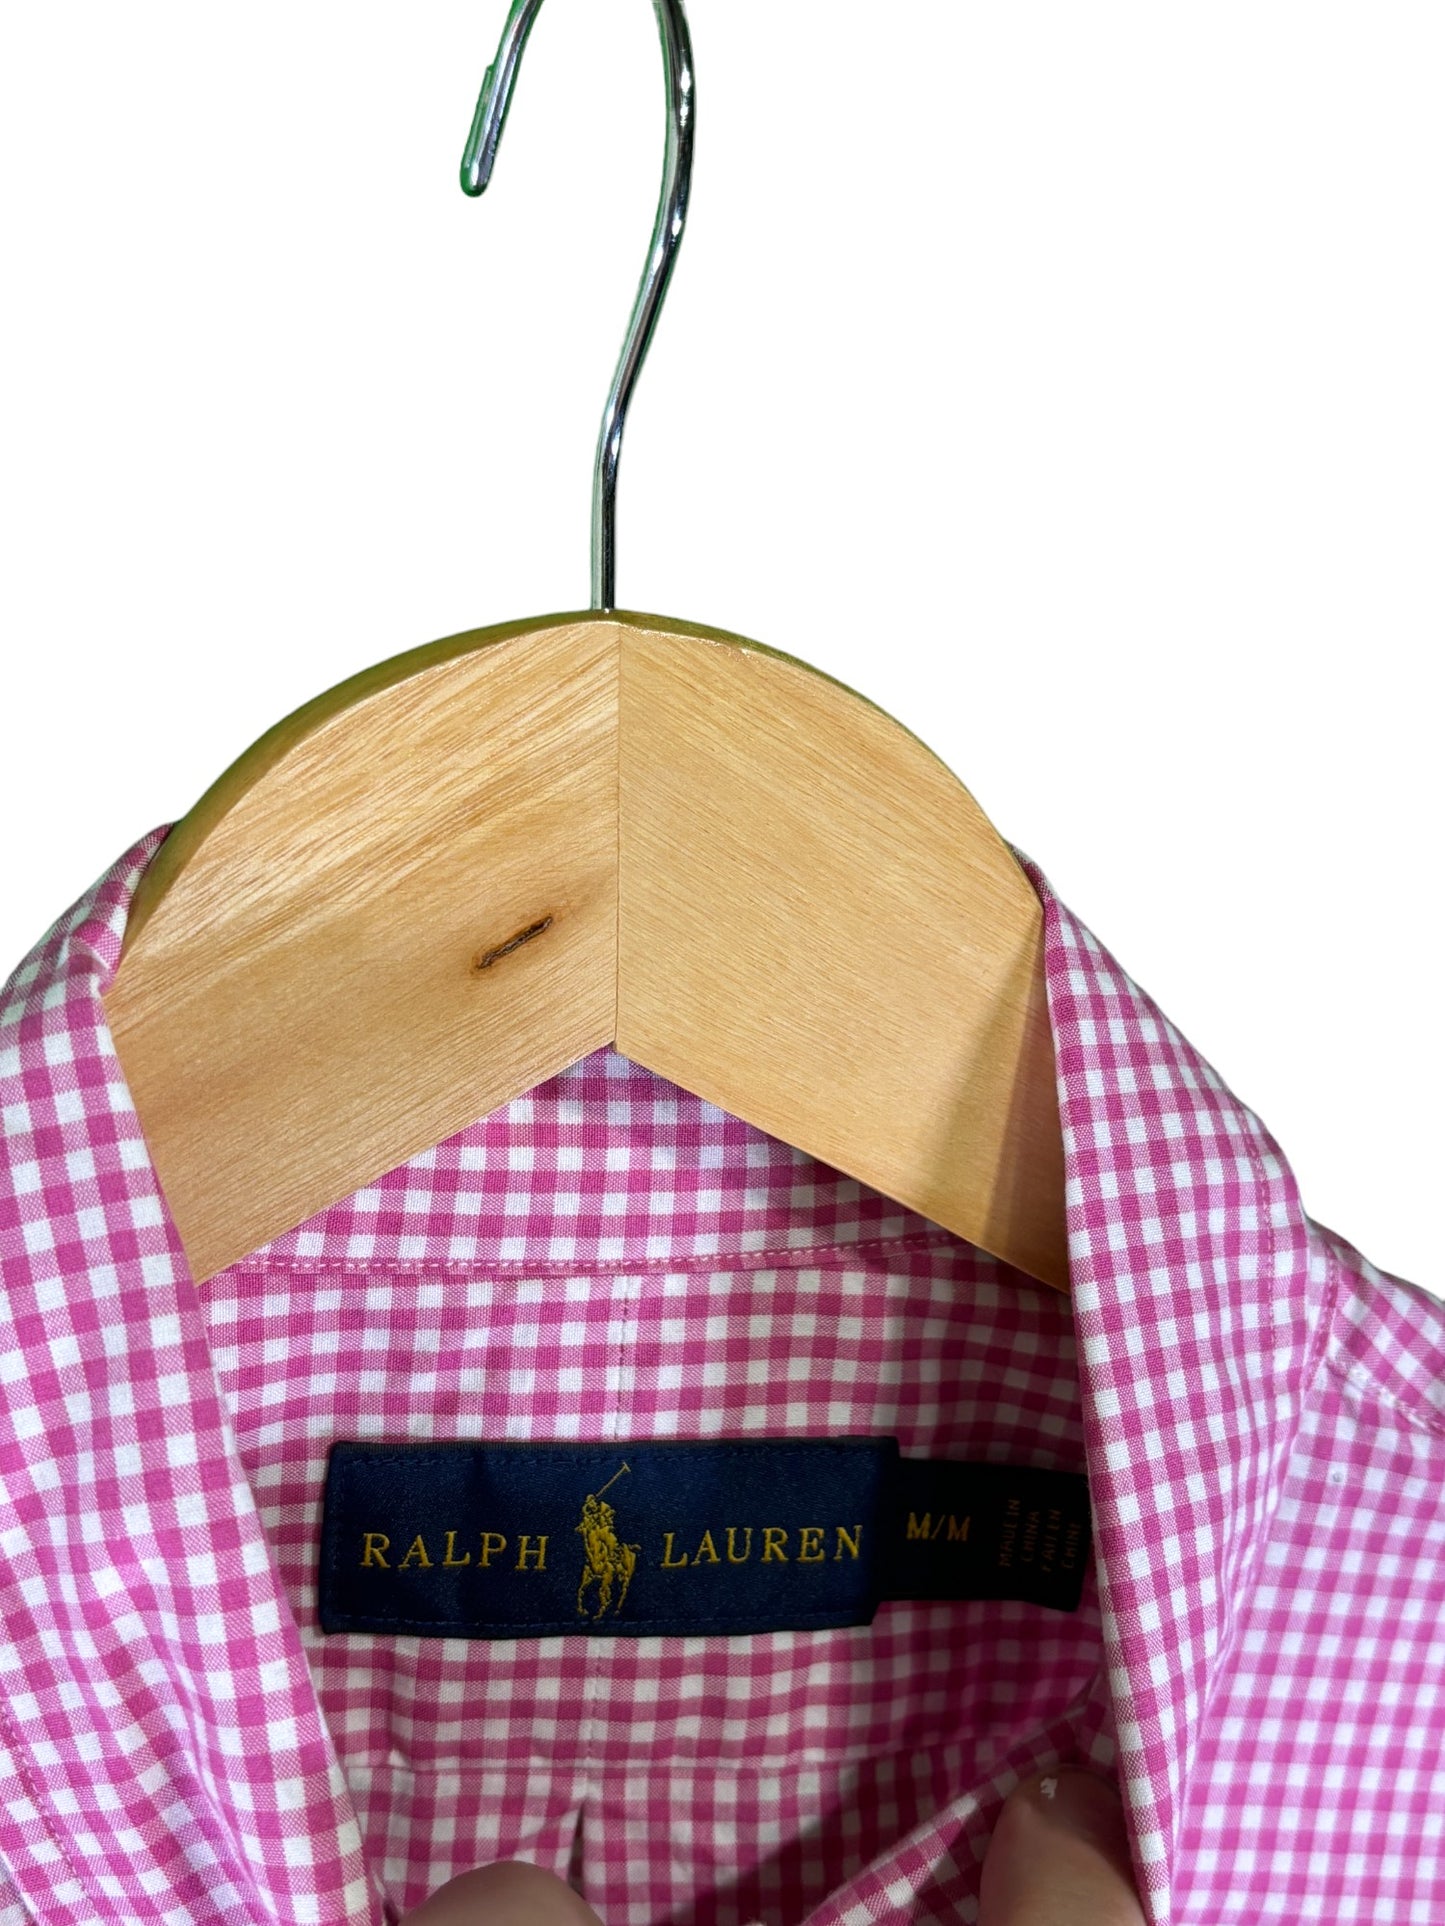 Polo Ralph Lauren Pink Checkered Button Up Long Sleeve Size Medium